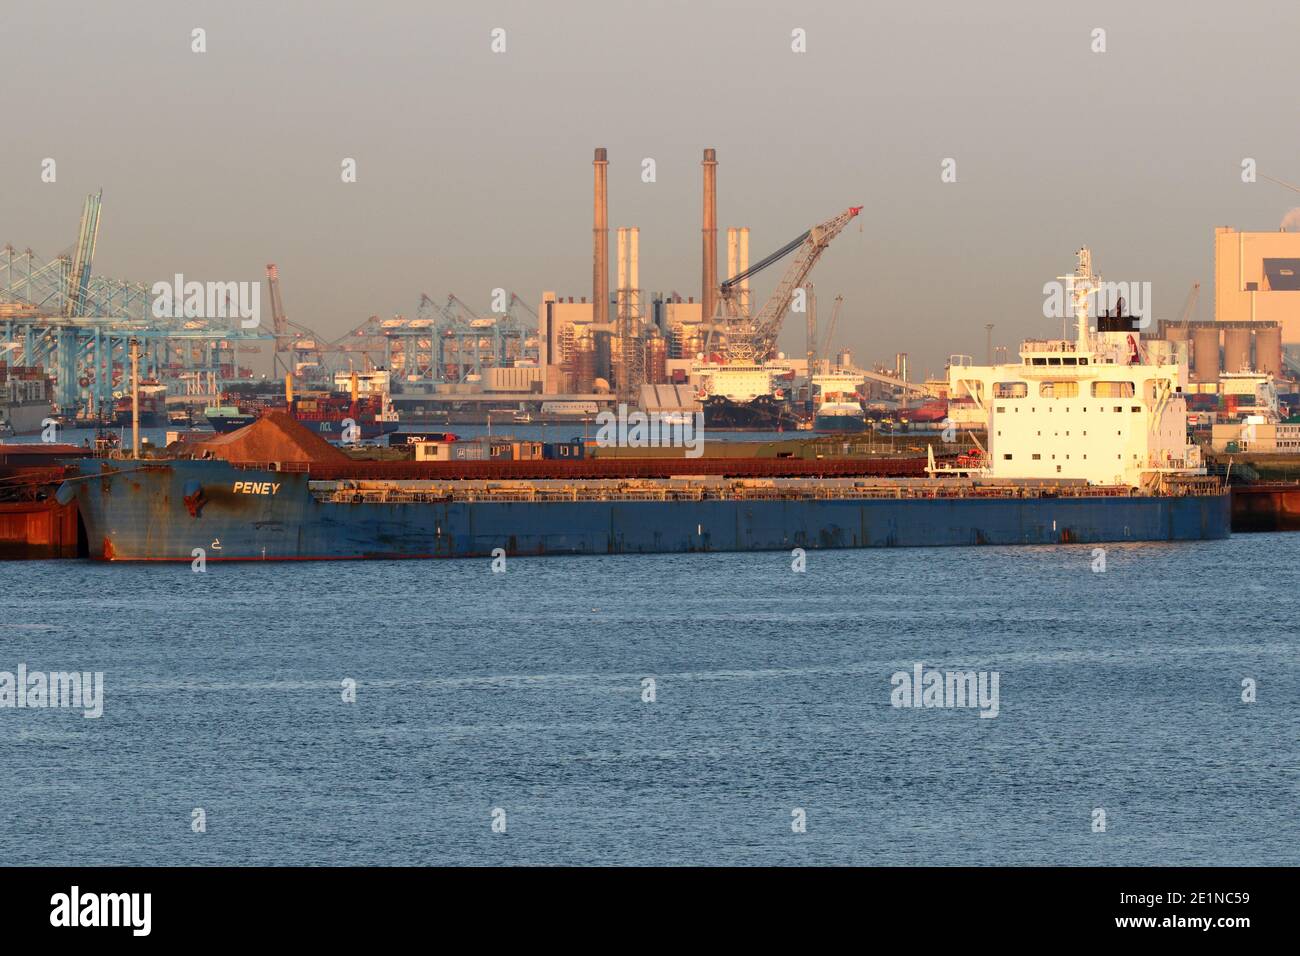 Il 18 settembre 2020 la nave Peney sarà scaricata nel porto di Rotterdam. Foto Stock